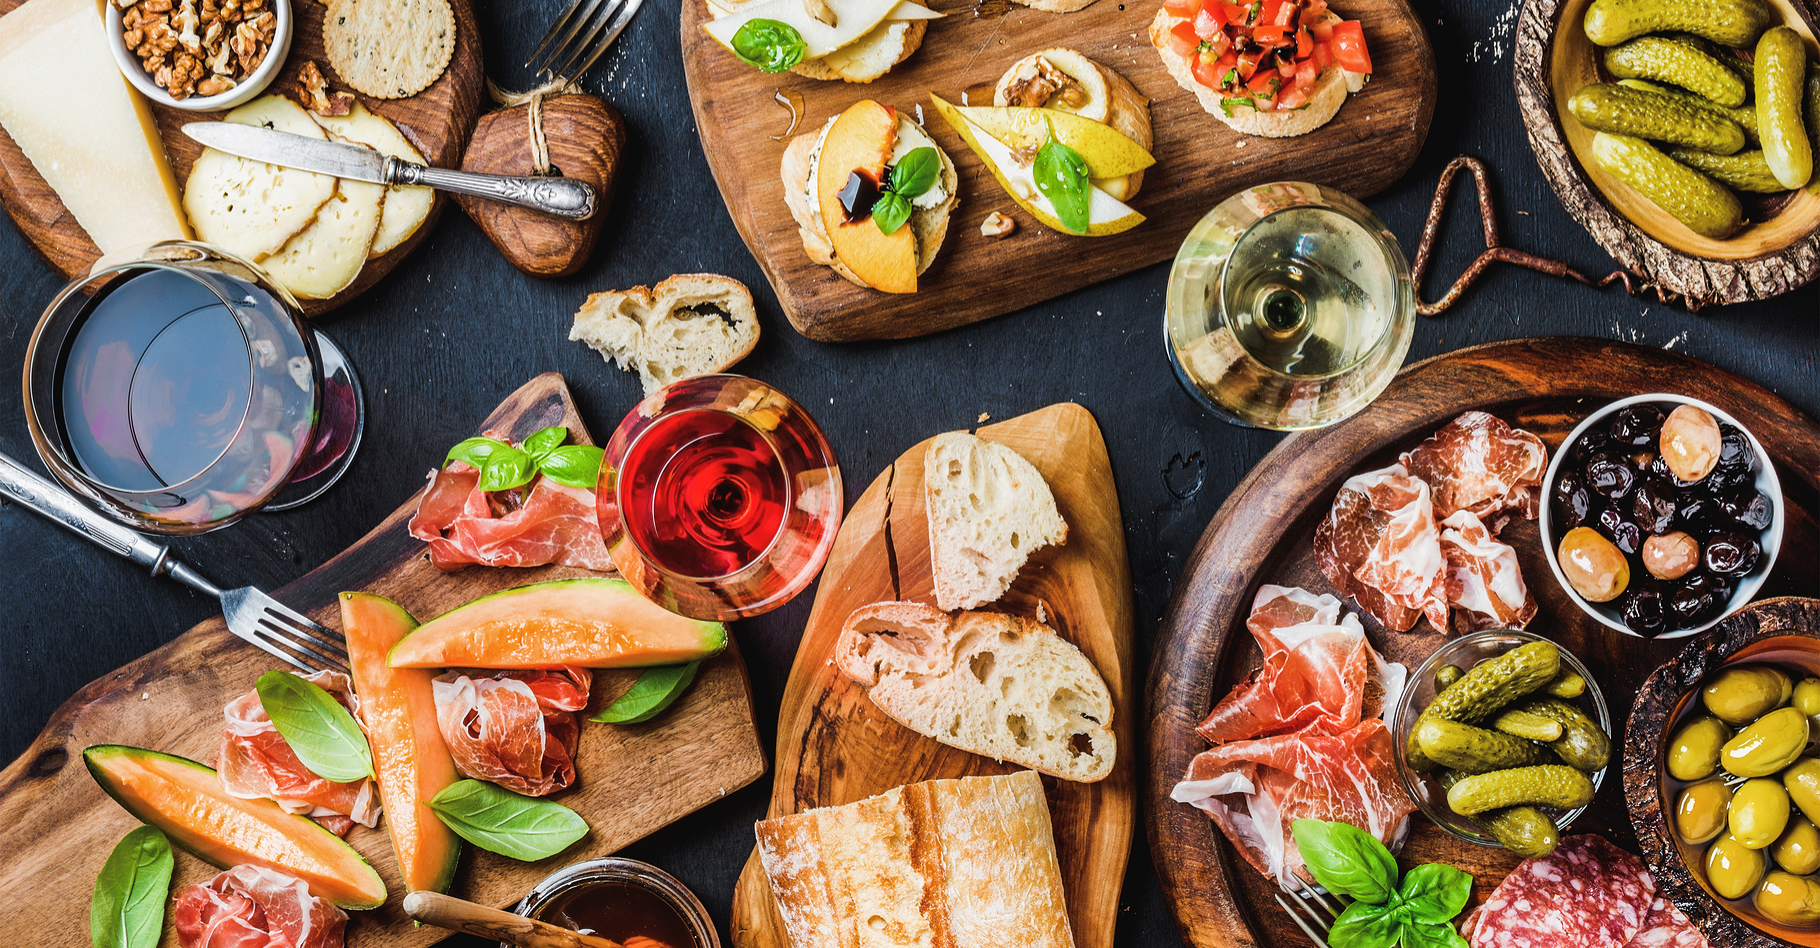 En 2016, la Semaine du goût met à l’honneur les liens entre alimentation, goût et santé. L'occasion de renouer avec une alimentation saine et équilibrée. © Foxys Forest Manufacture, Shutterstock